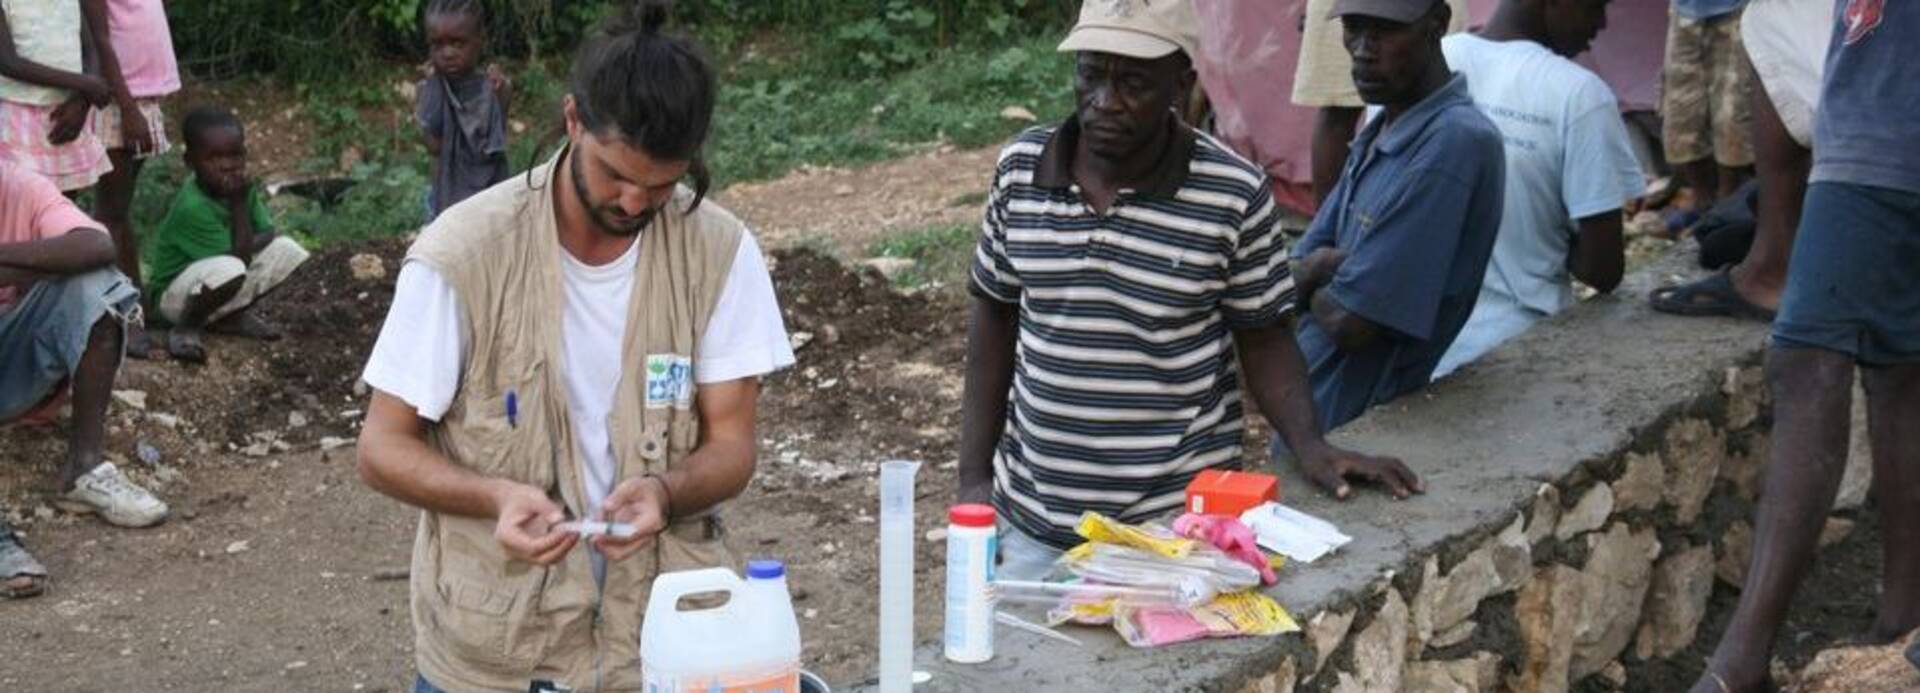 Mitarbeiter von Aktion gegen den Hunger bei Cholera Prävention in Haiti